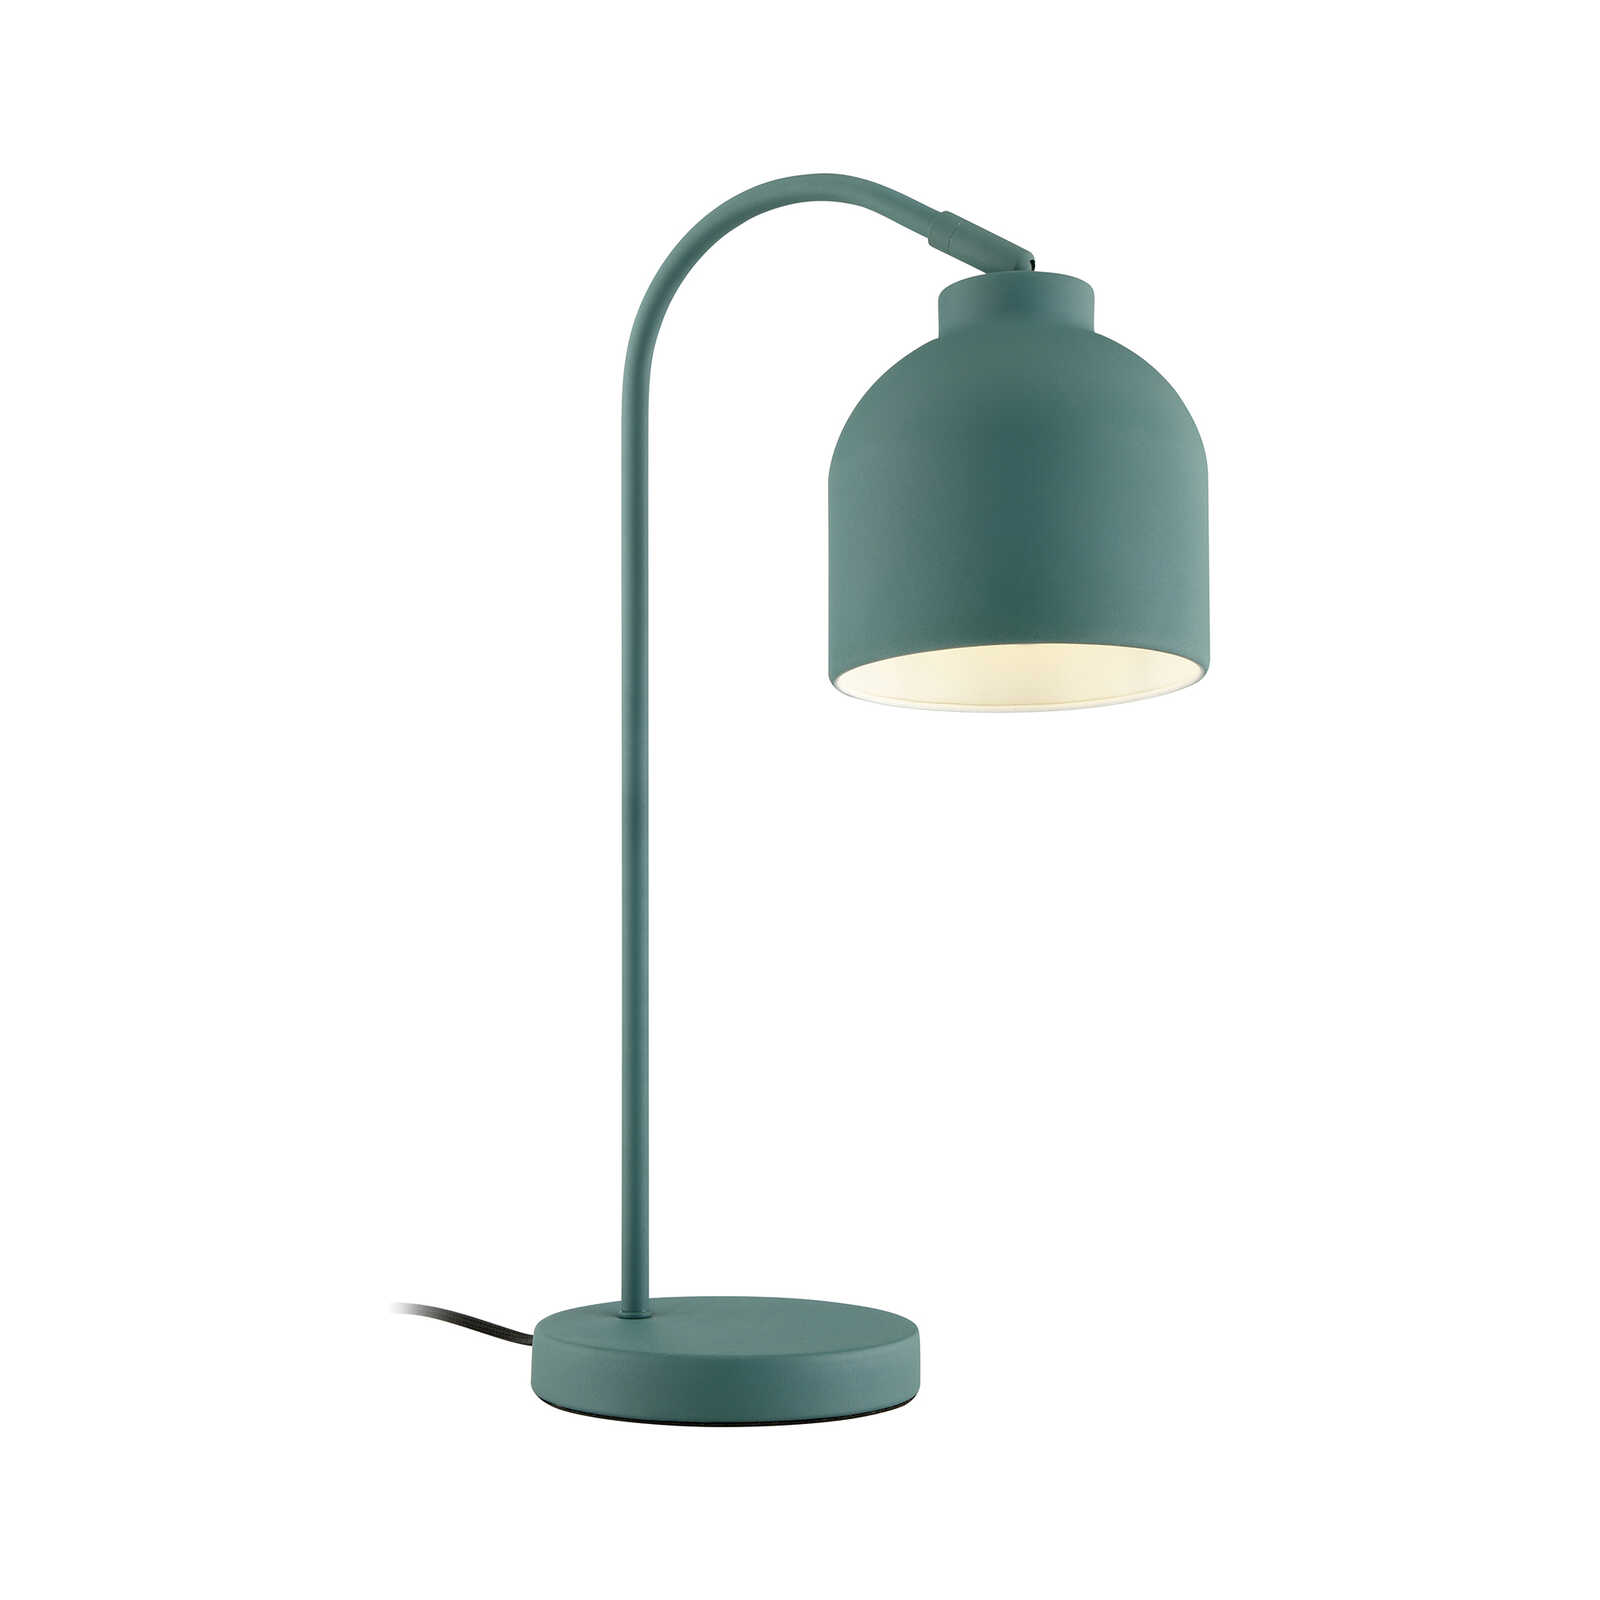 Metal table lamp - Patrick 2 - Green
